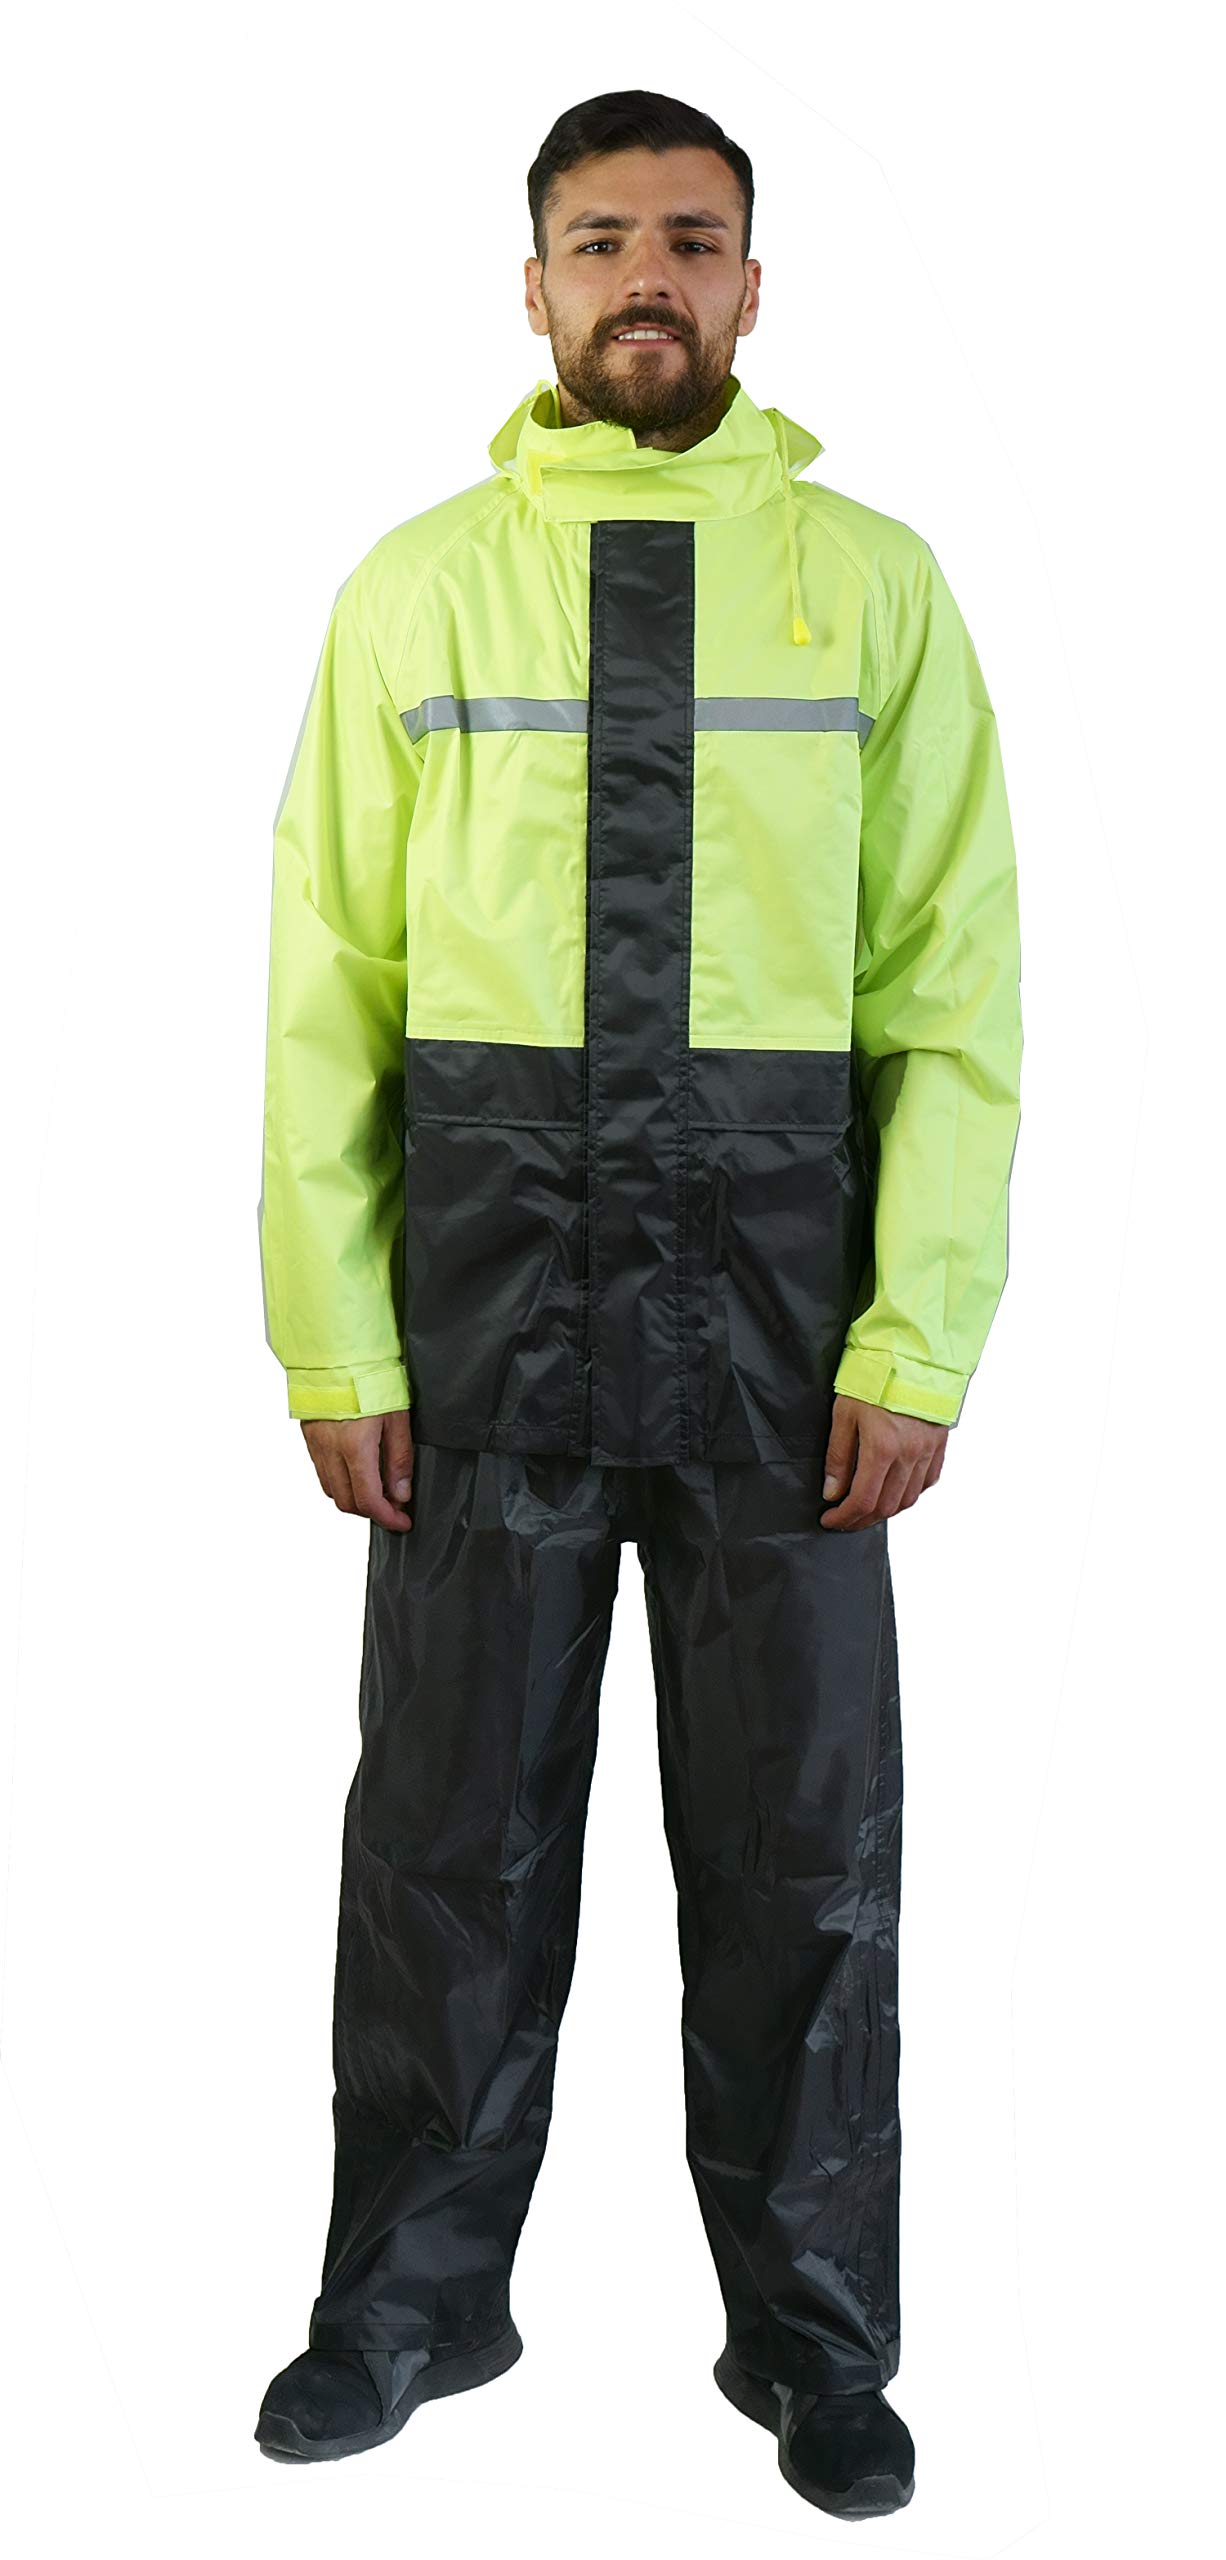 TJ MARVIN Regenschutz Set (Jacke, Hose und Tasche) SPORTIVO E34 XS Nero Giallo fluo von TJ MARVIN